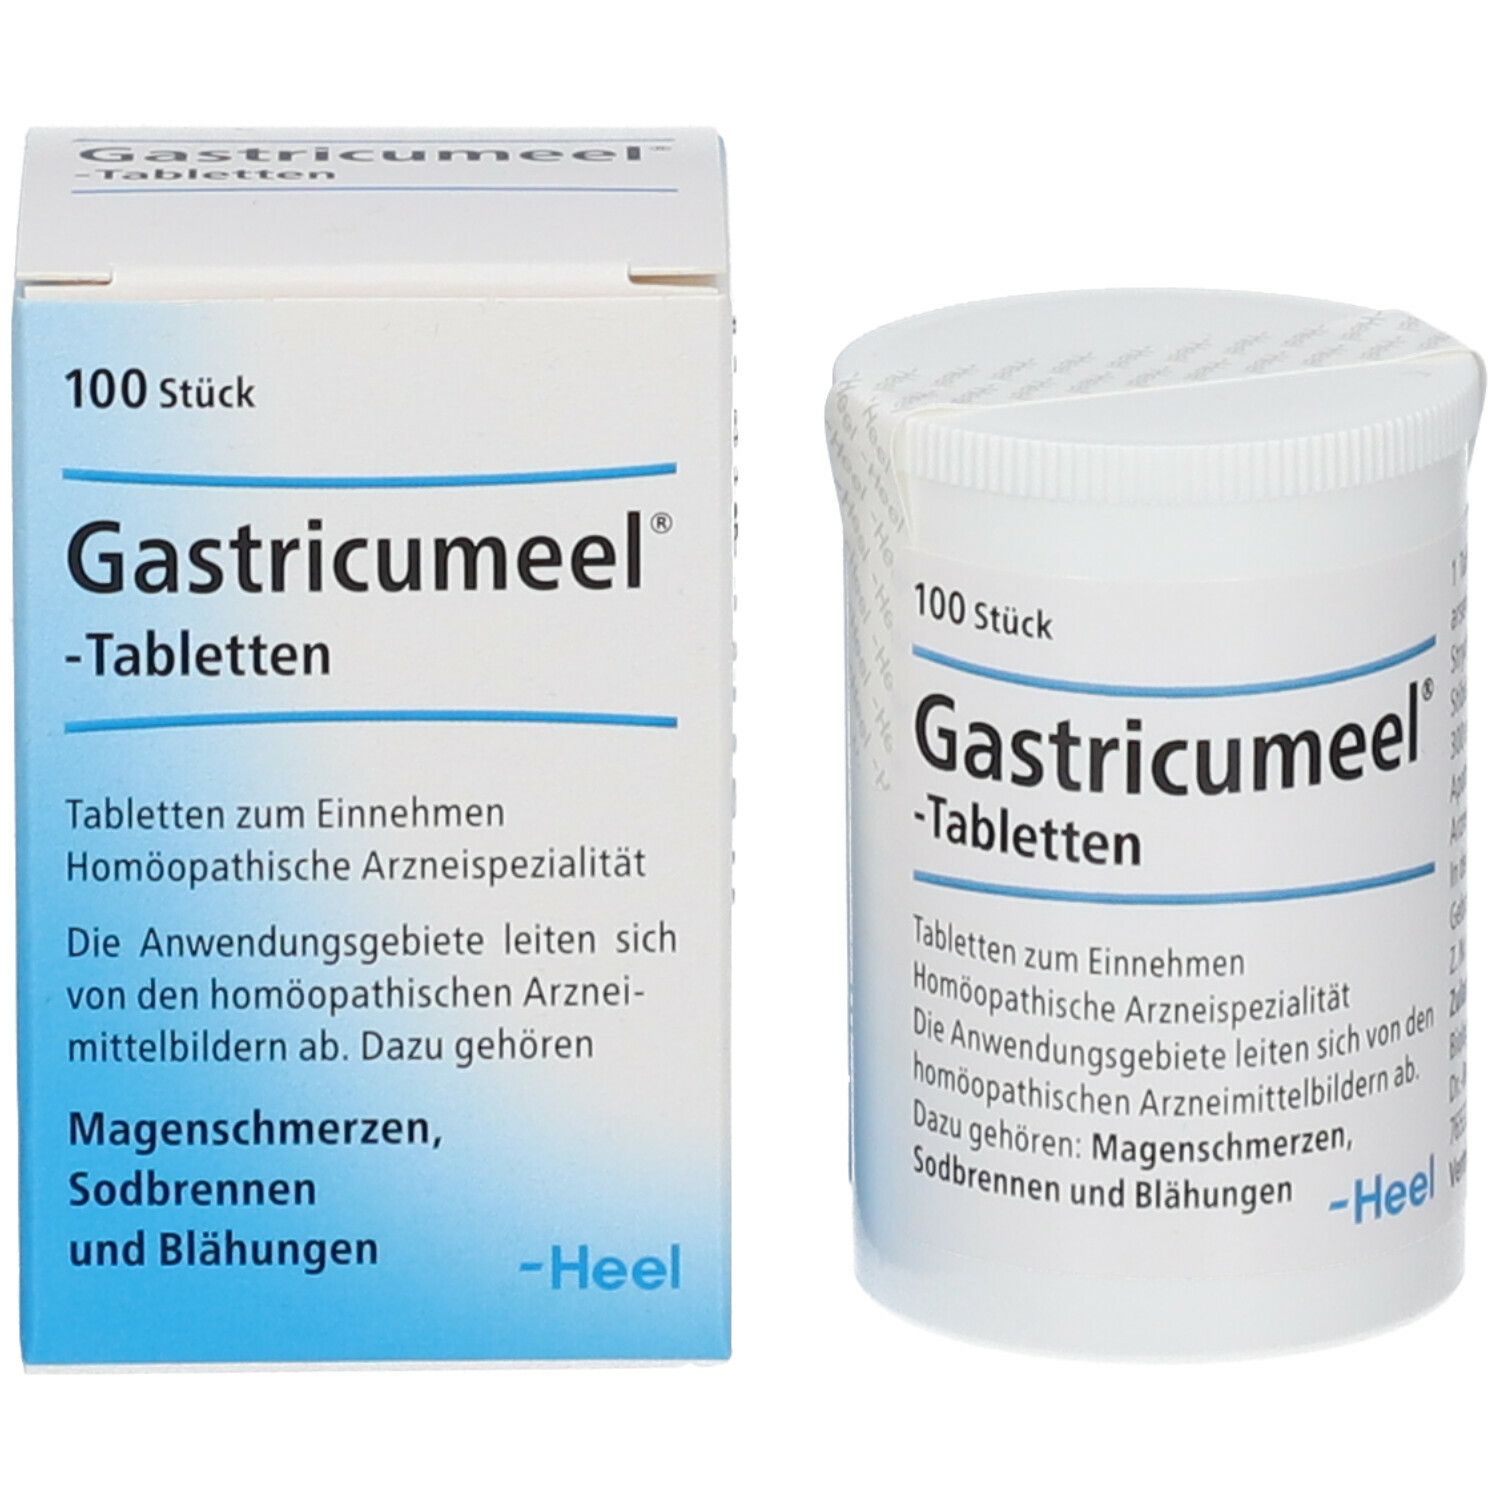 Gastricumeel®-Tabletten